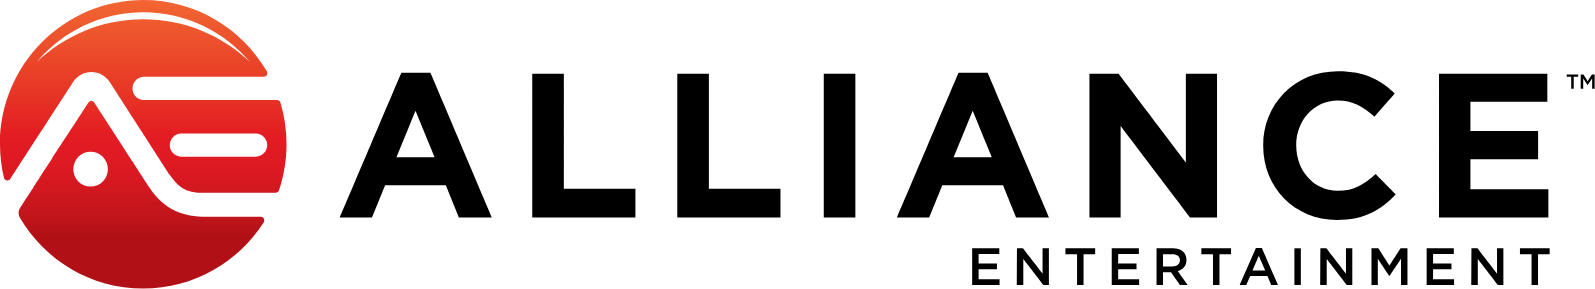 Alliance Entertainment logo large (transparent PNG)